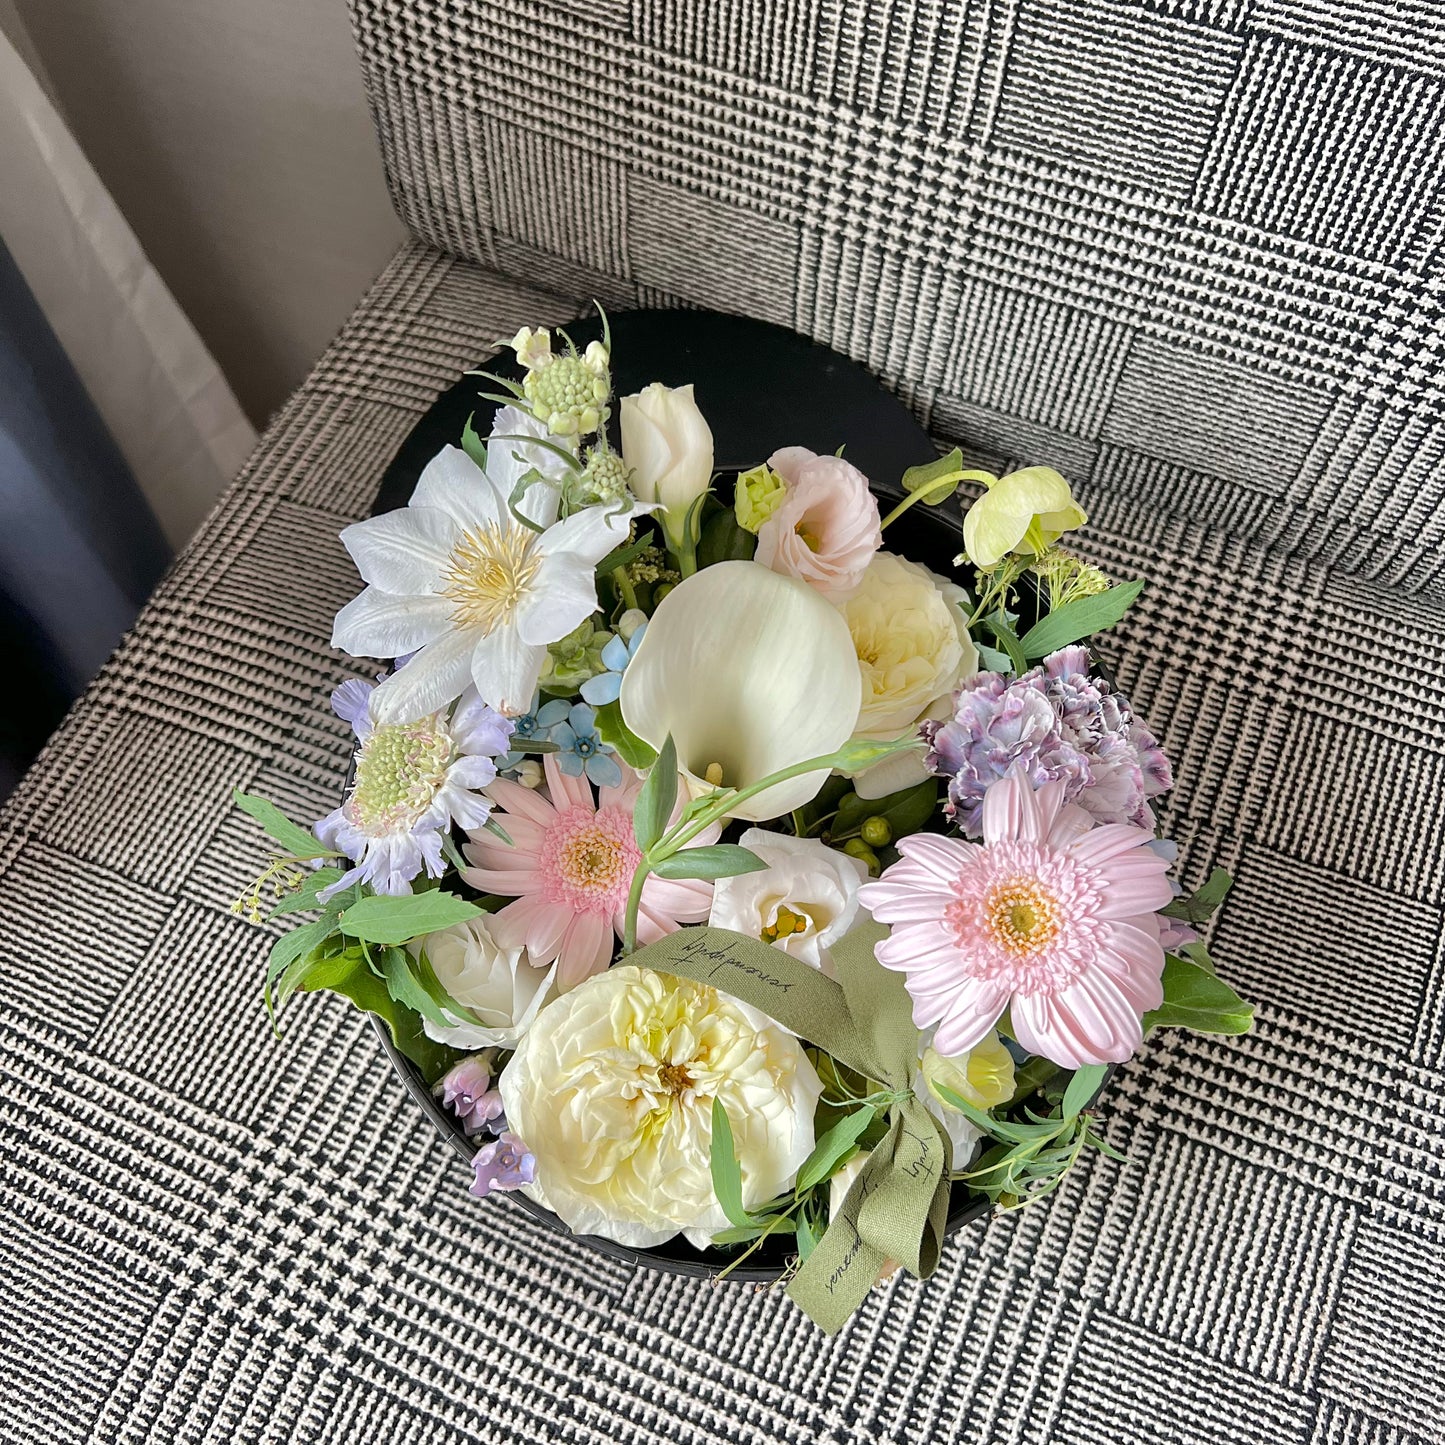 春夏特色花盒工作坊 | Bloom Box